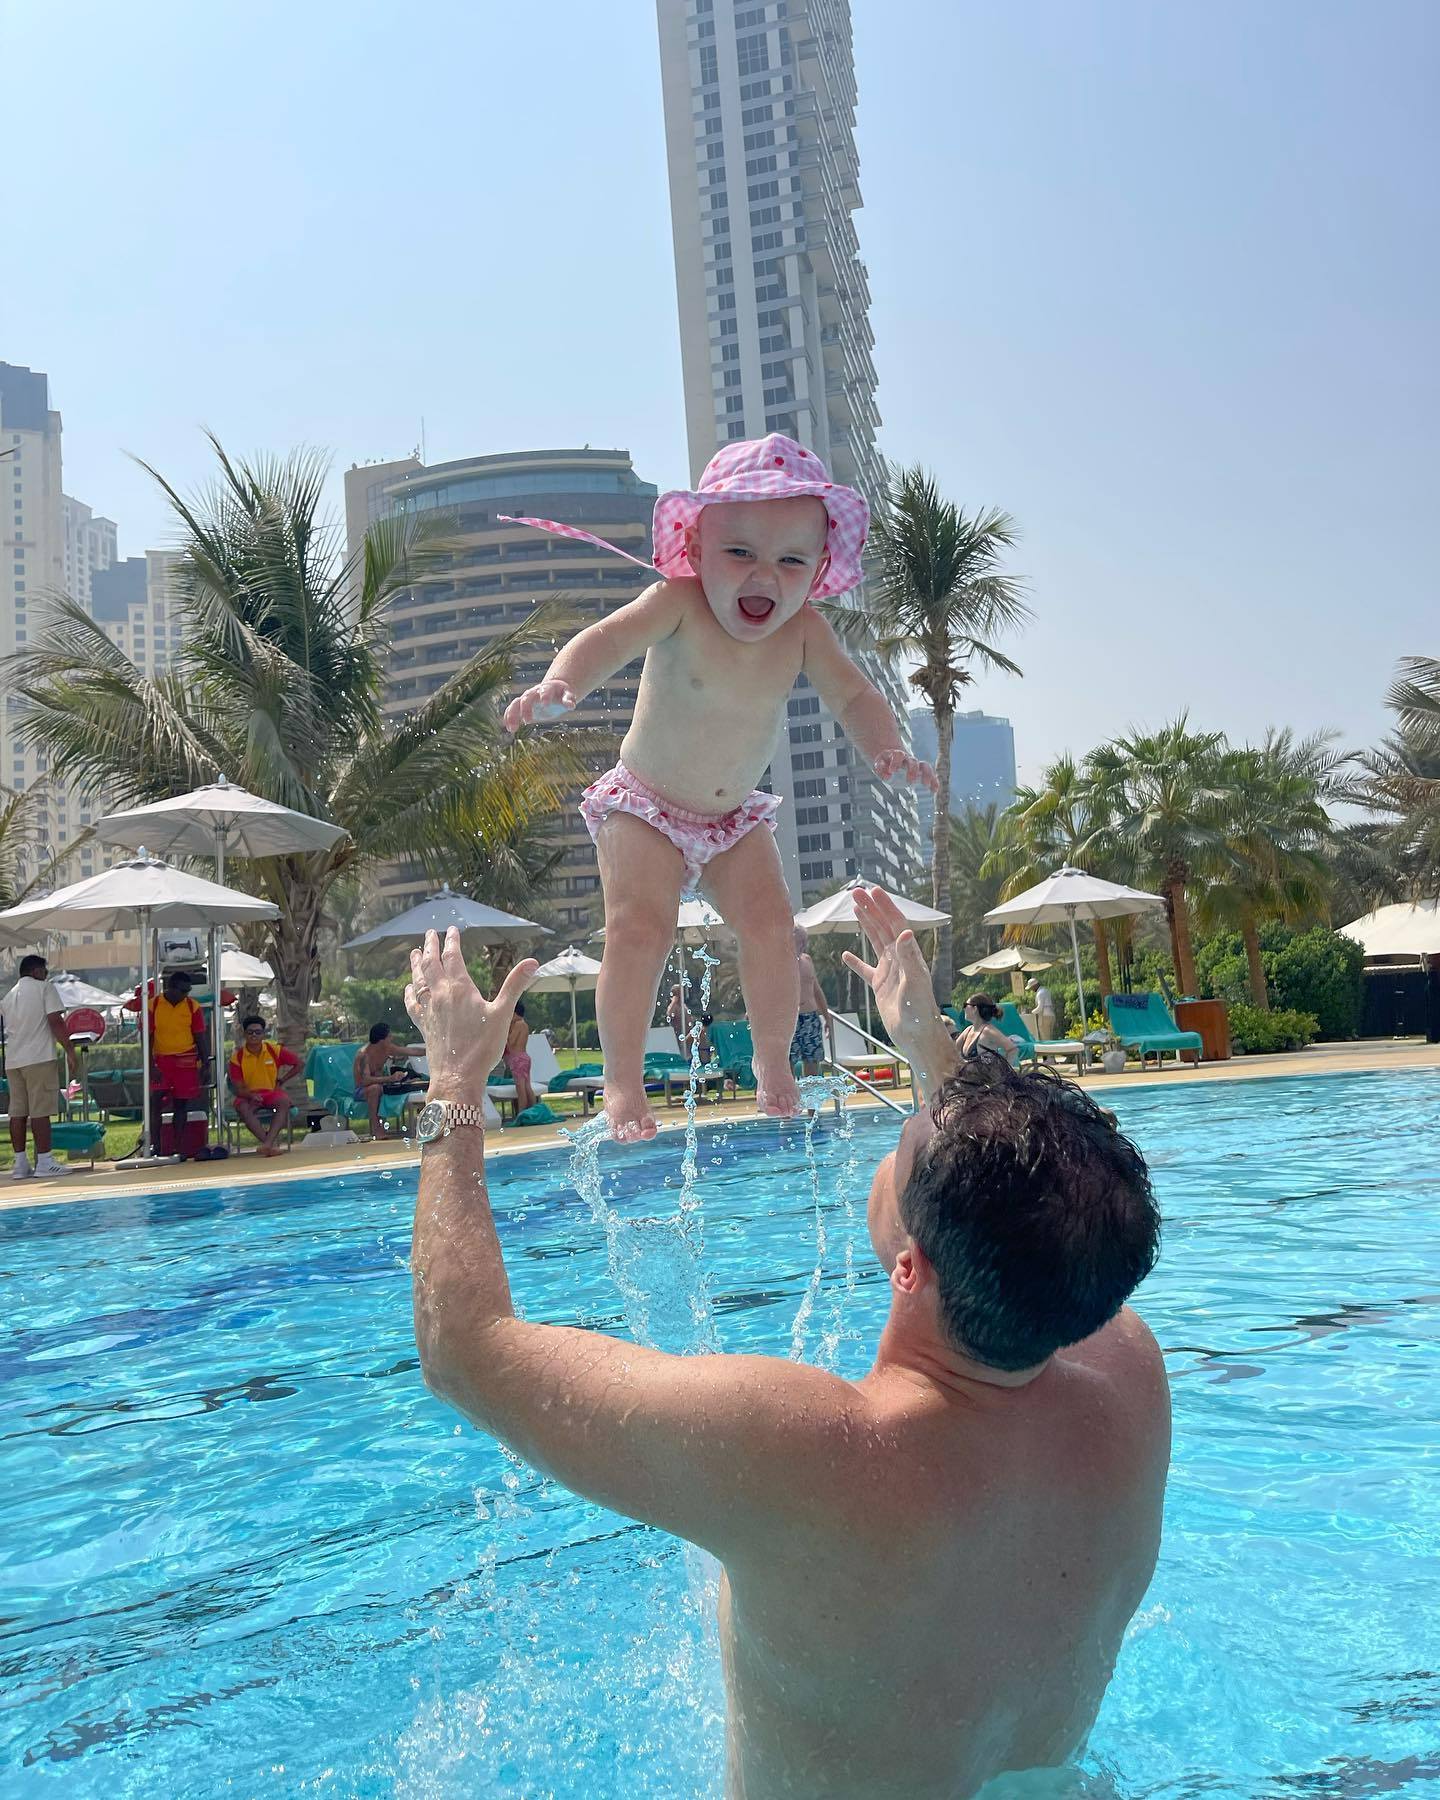 Greg spielte mit ihrer 10 Monate alten Tochter Margot im Pool